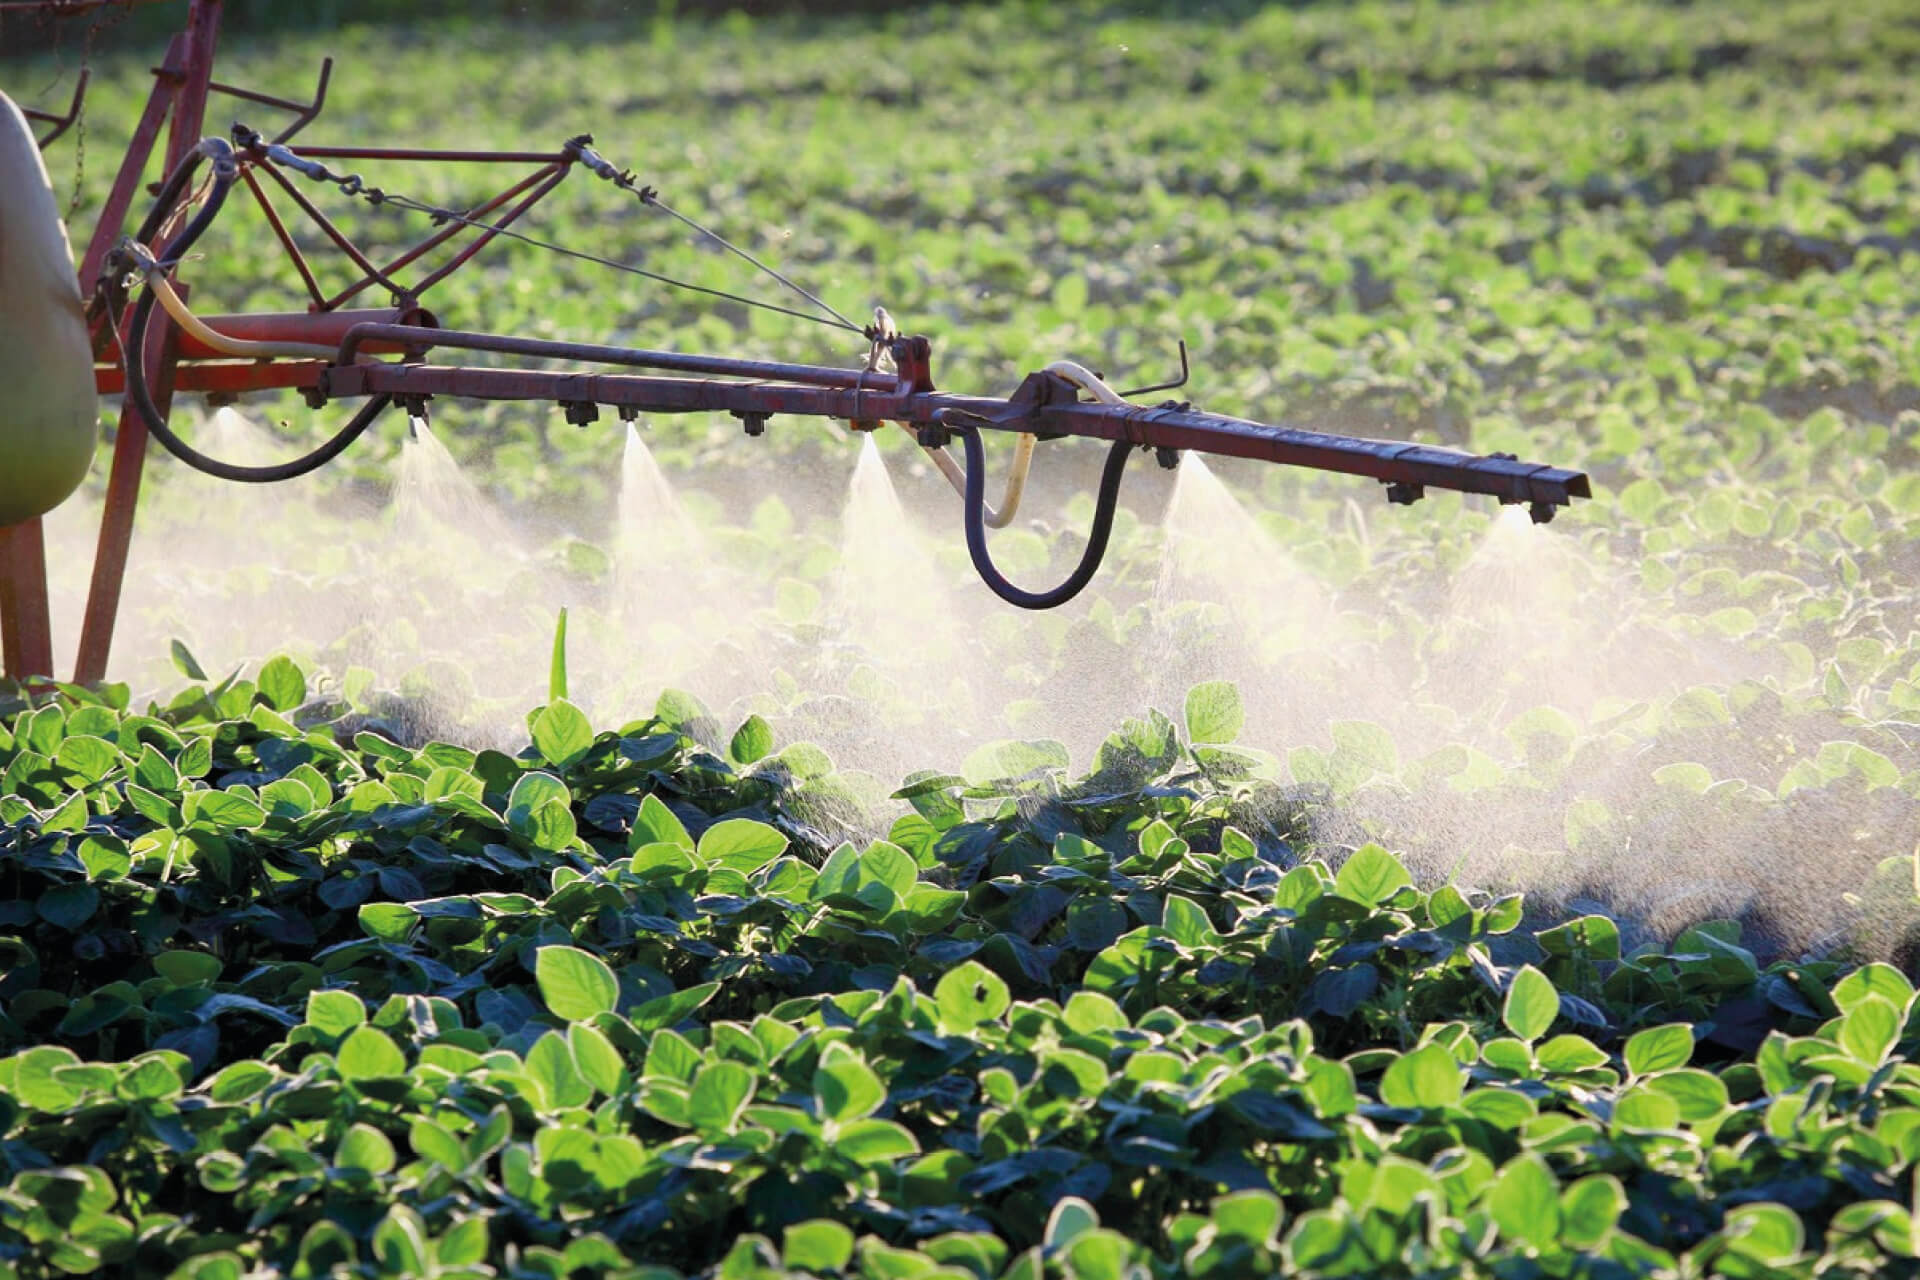 Пестициды и химические удобрения. Химикаты в сельском хозяйстве. Пестициды и гербициды. Опрыскивание ядохимикатами. Пестициды в сельском хозяйстве.